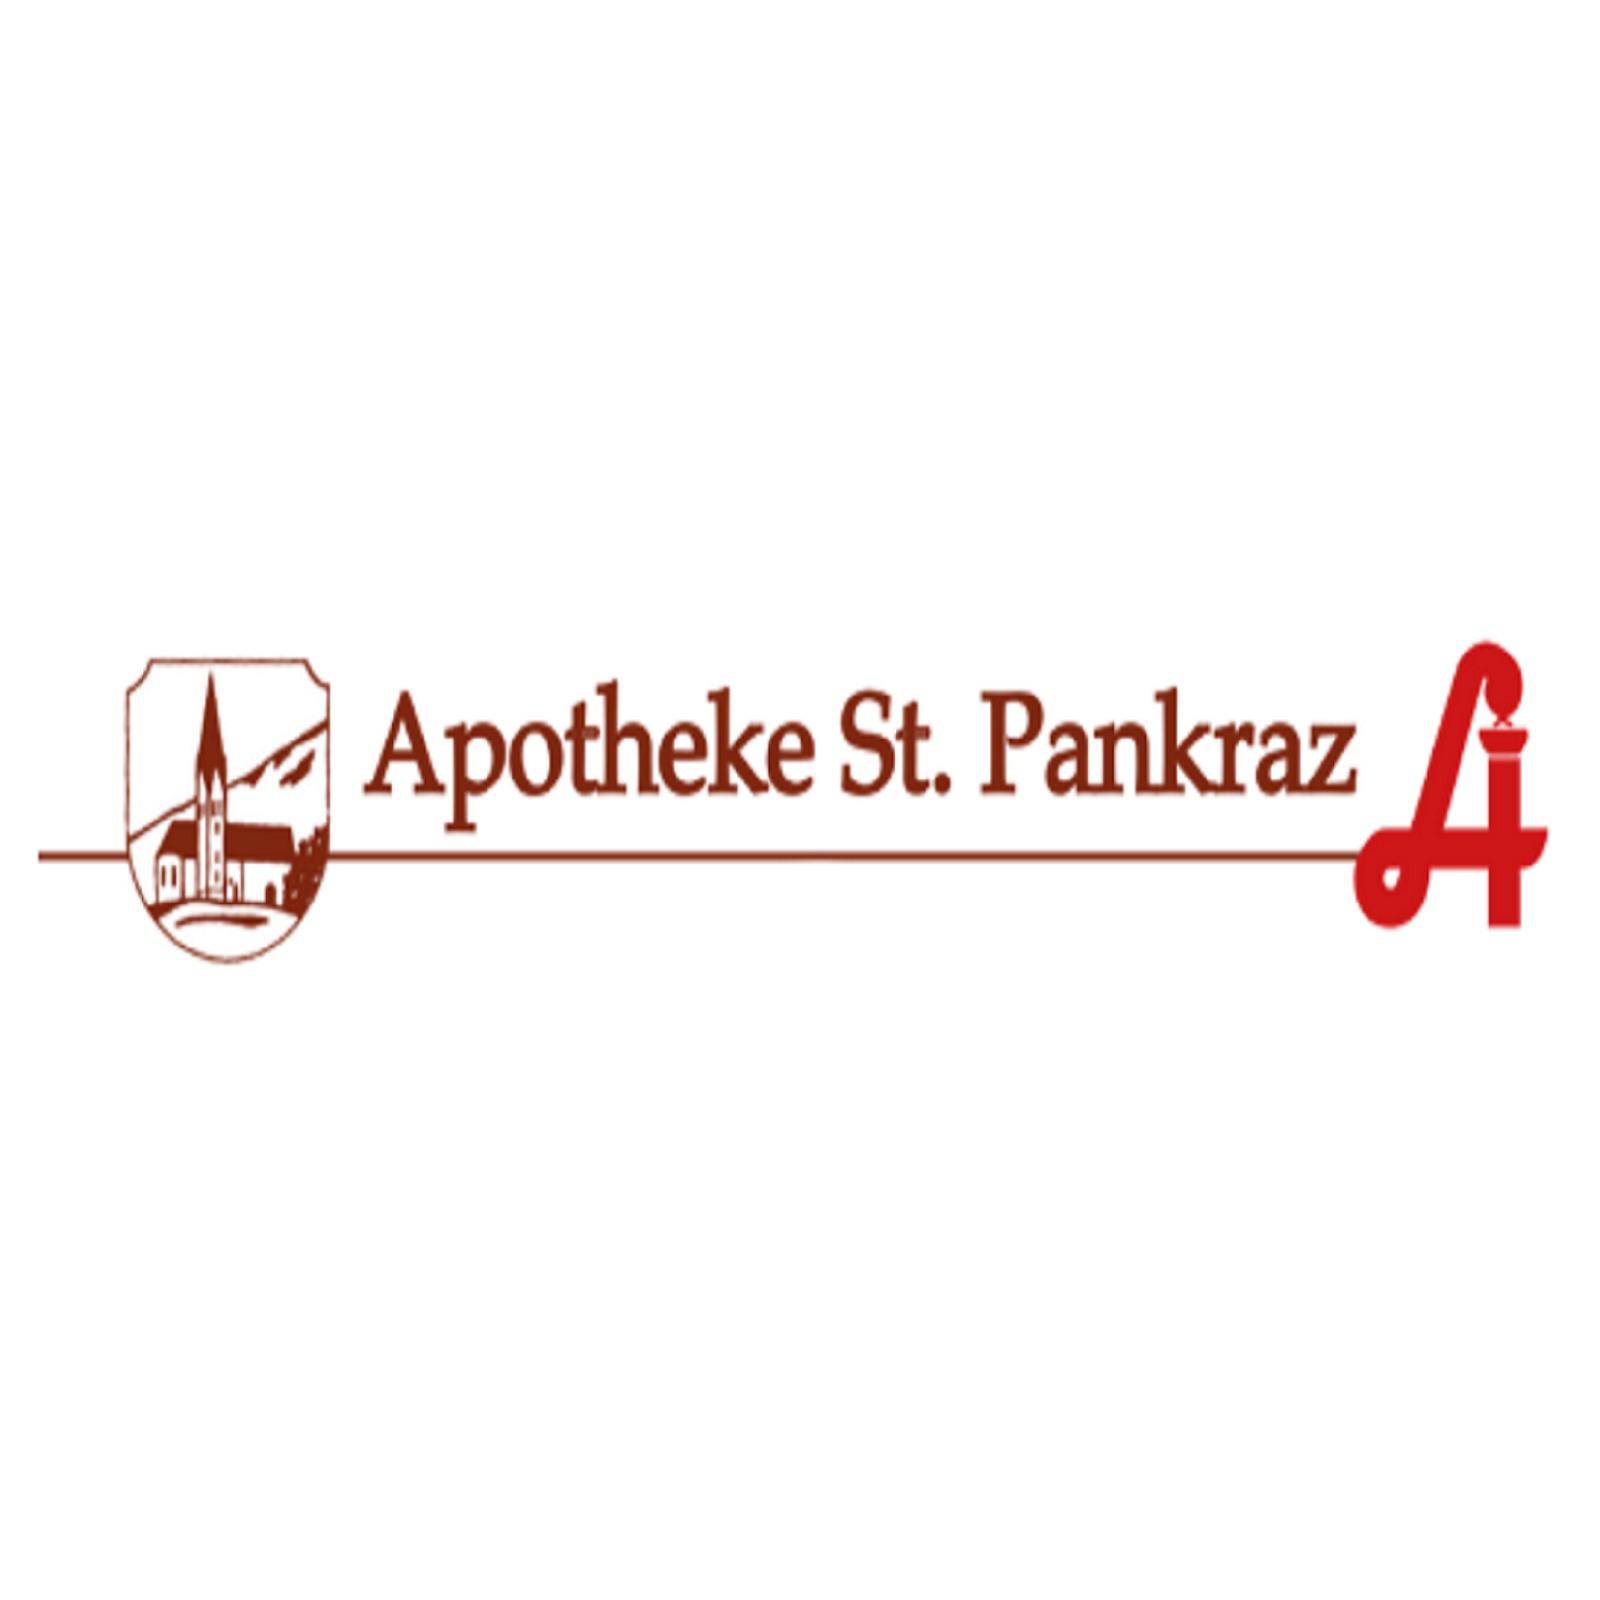 St Pankraz-Apotheke - Logo